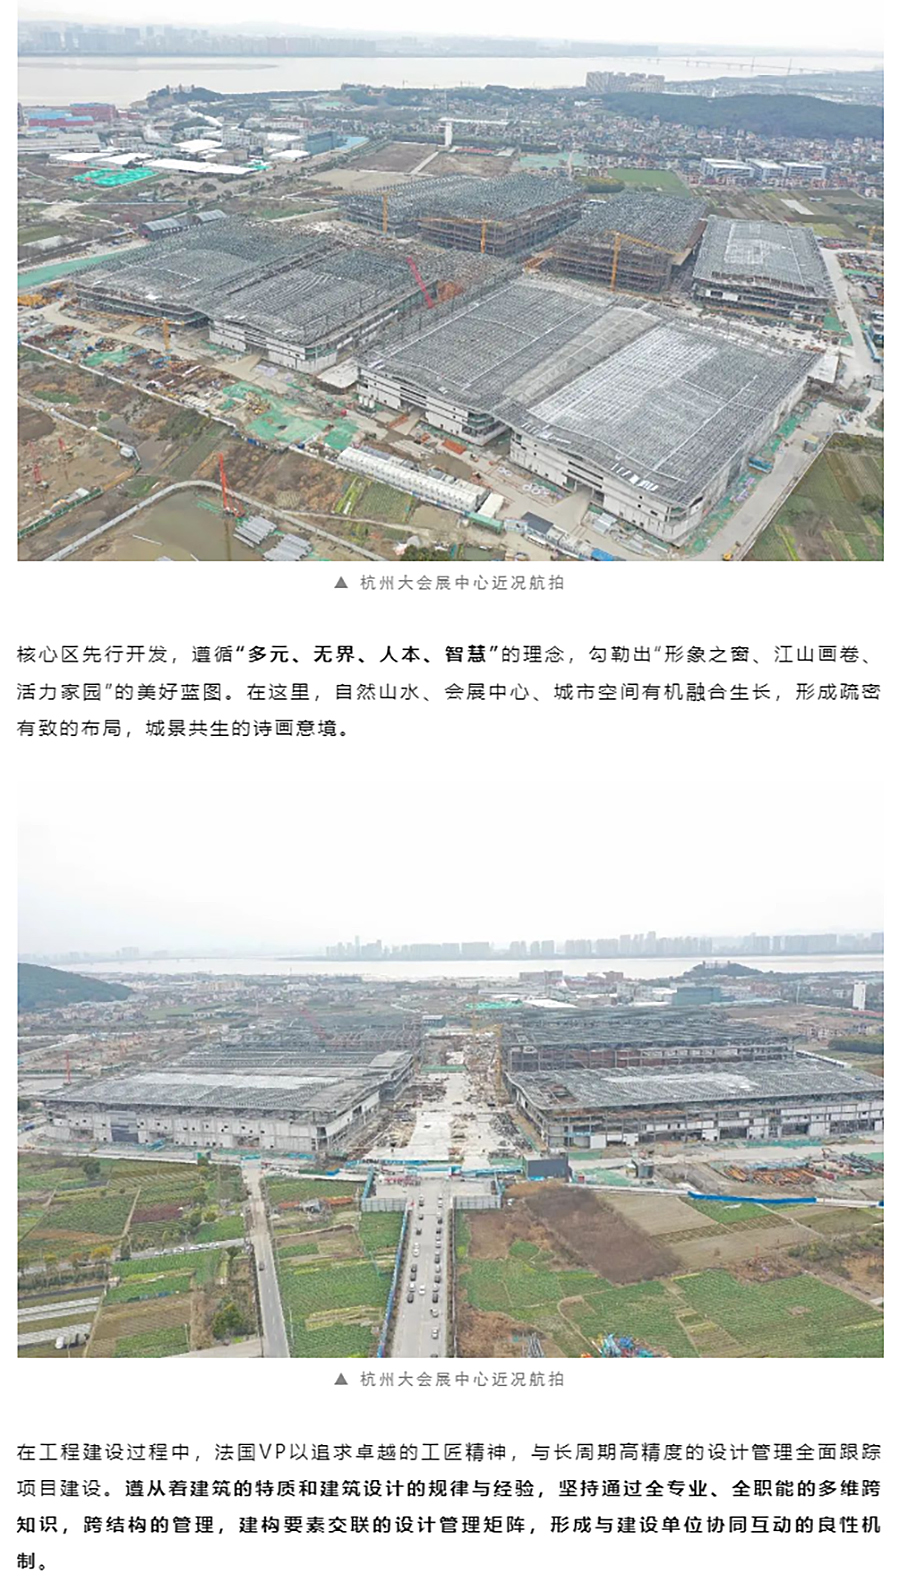 项目近况-_-杭州大会展中心一期展馆钢结构已全面结顶_0001_图层-2 拷贝.jpg